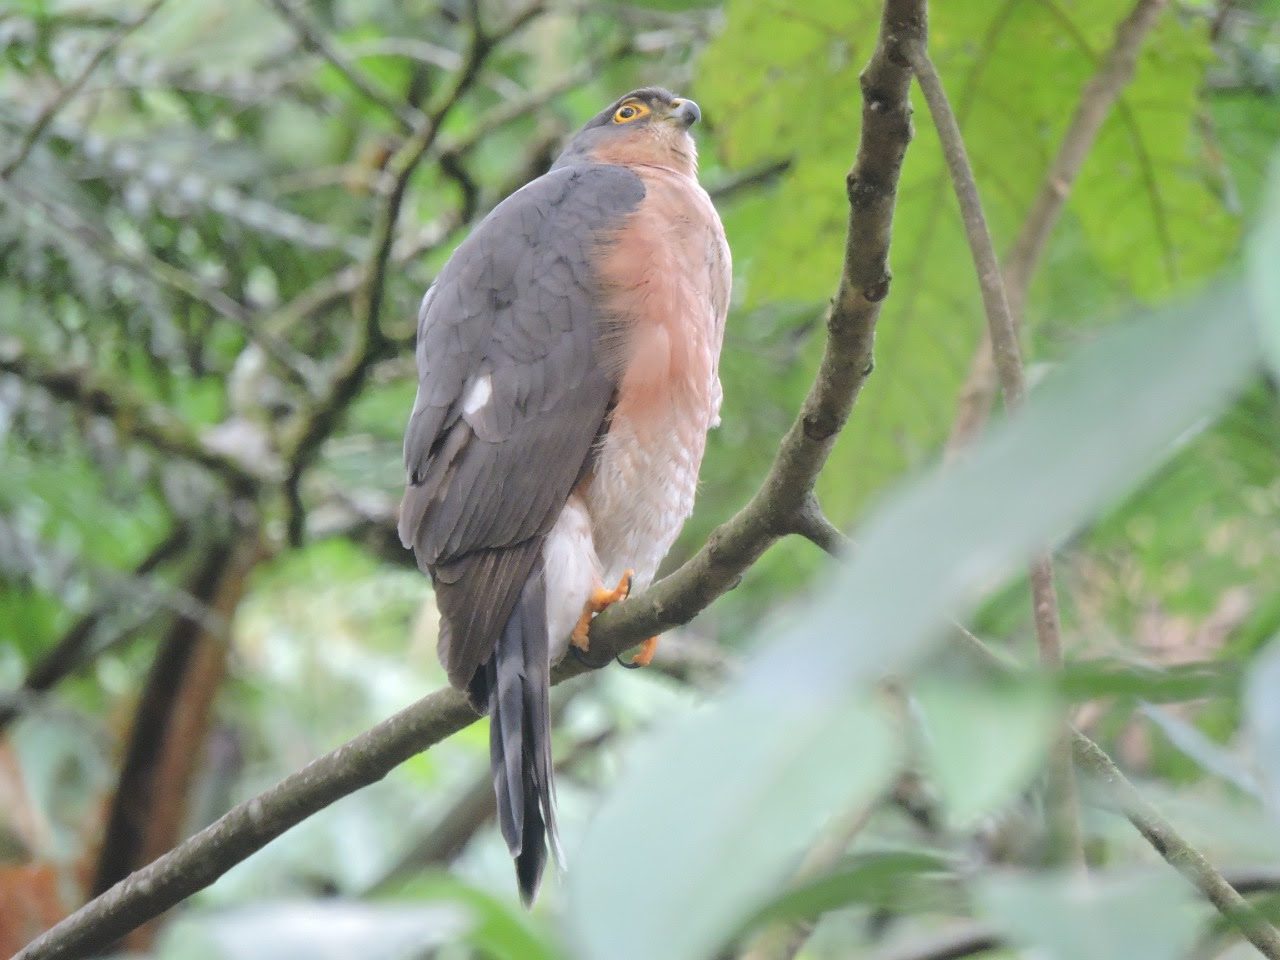  Avistamiento de aves en Medellín